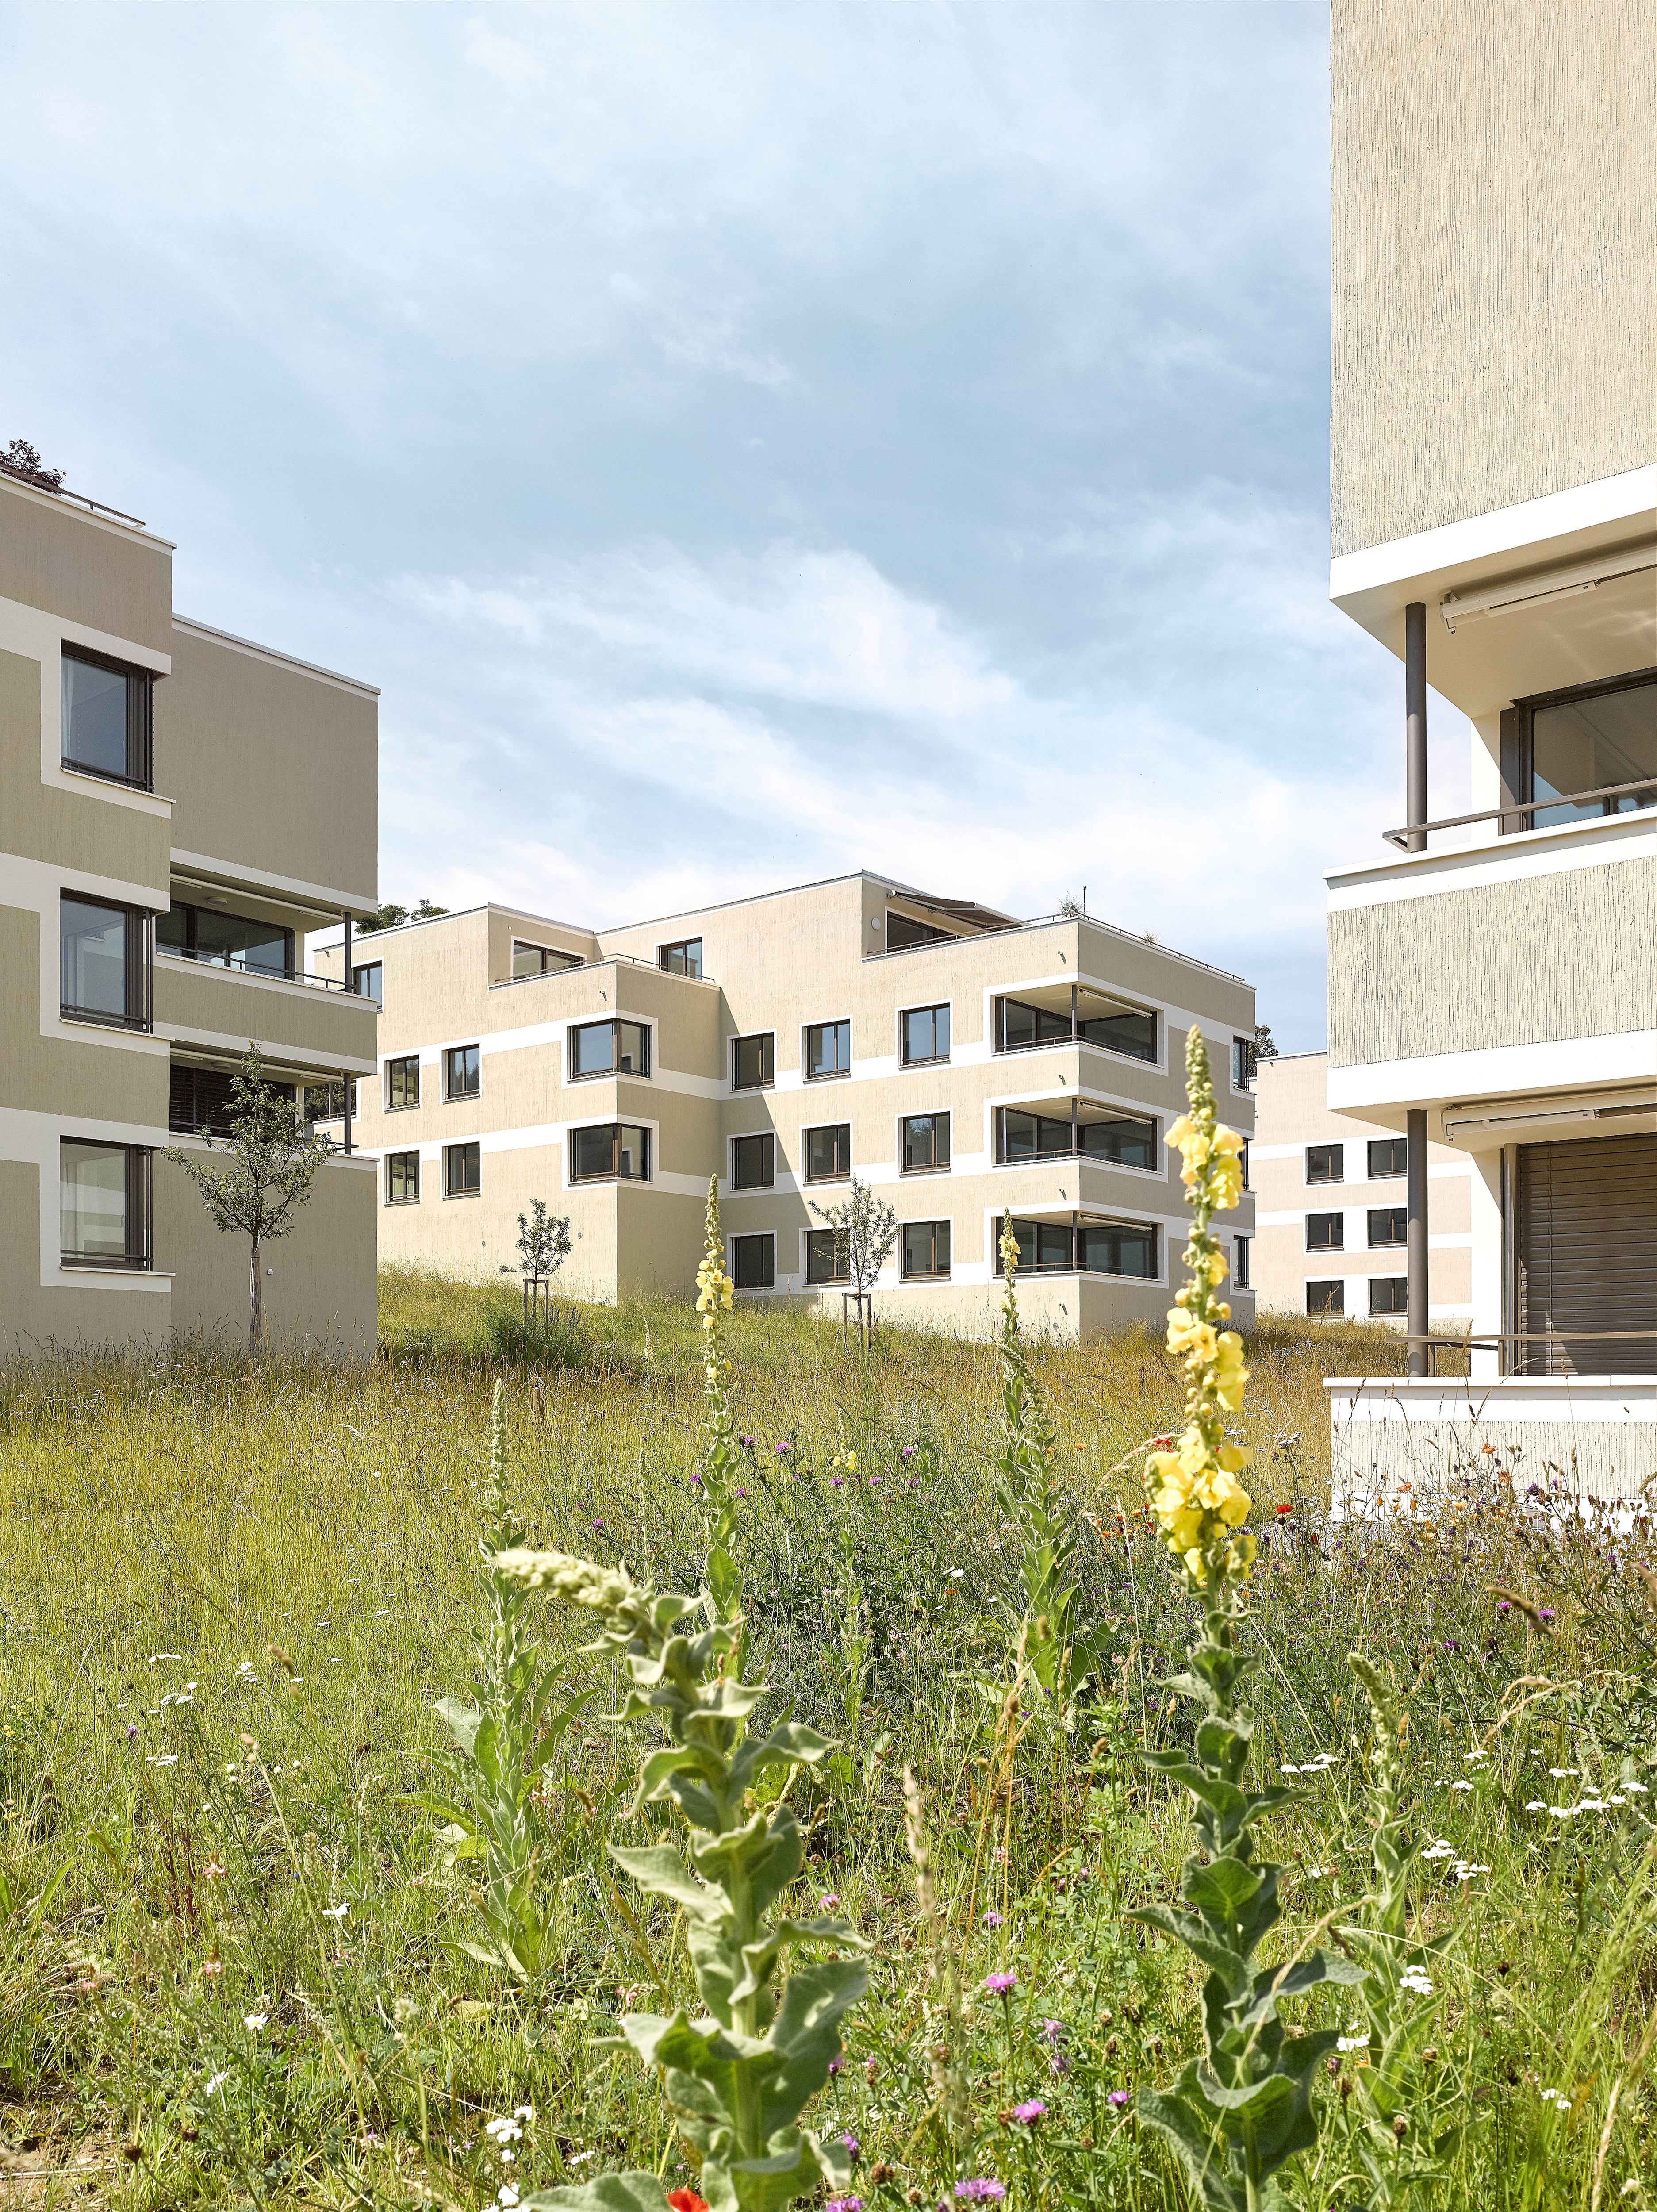 rollimarchini AG, Architekten Bern, Architektur, Wohnübergauung Bellvuepark, Port, Wettbewerb, Neubau, Wohnen